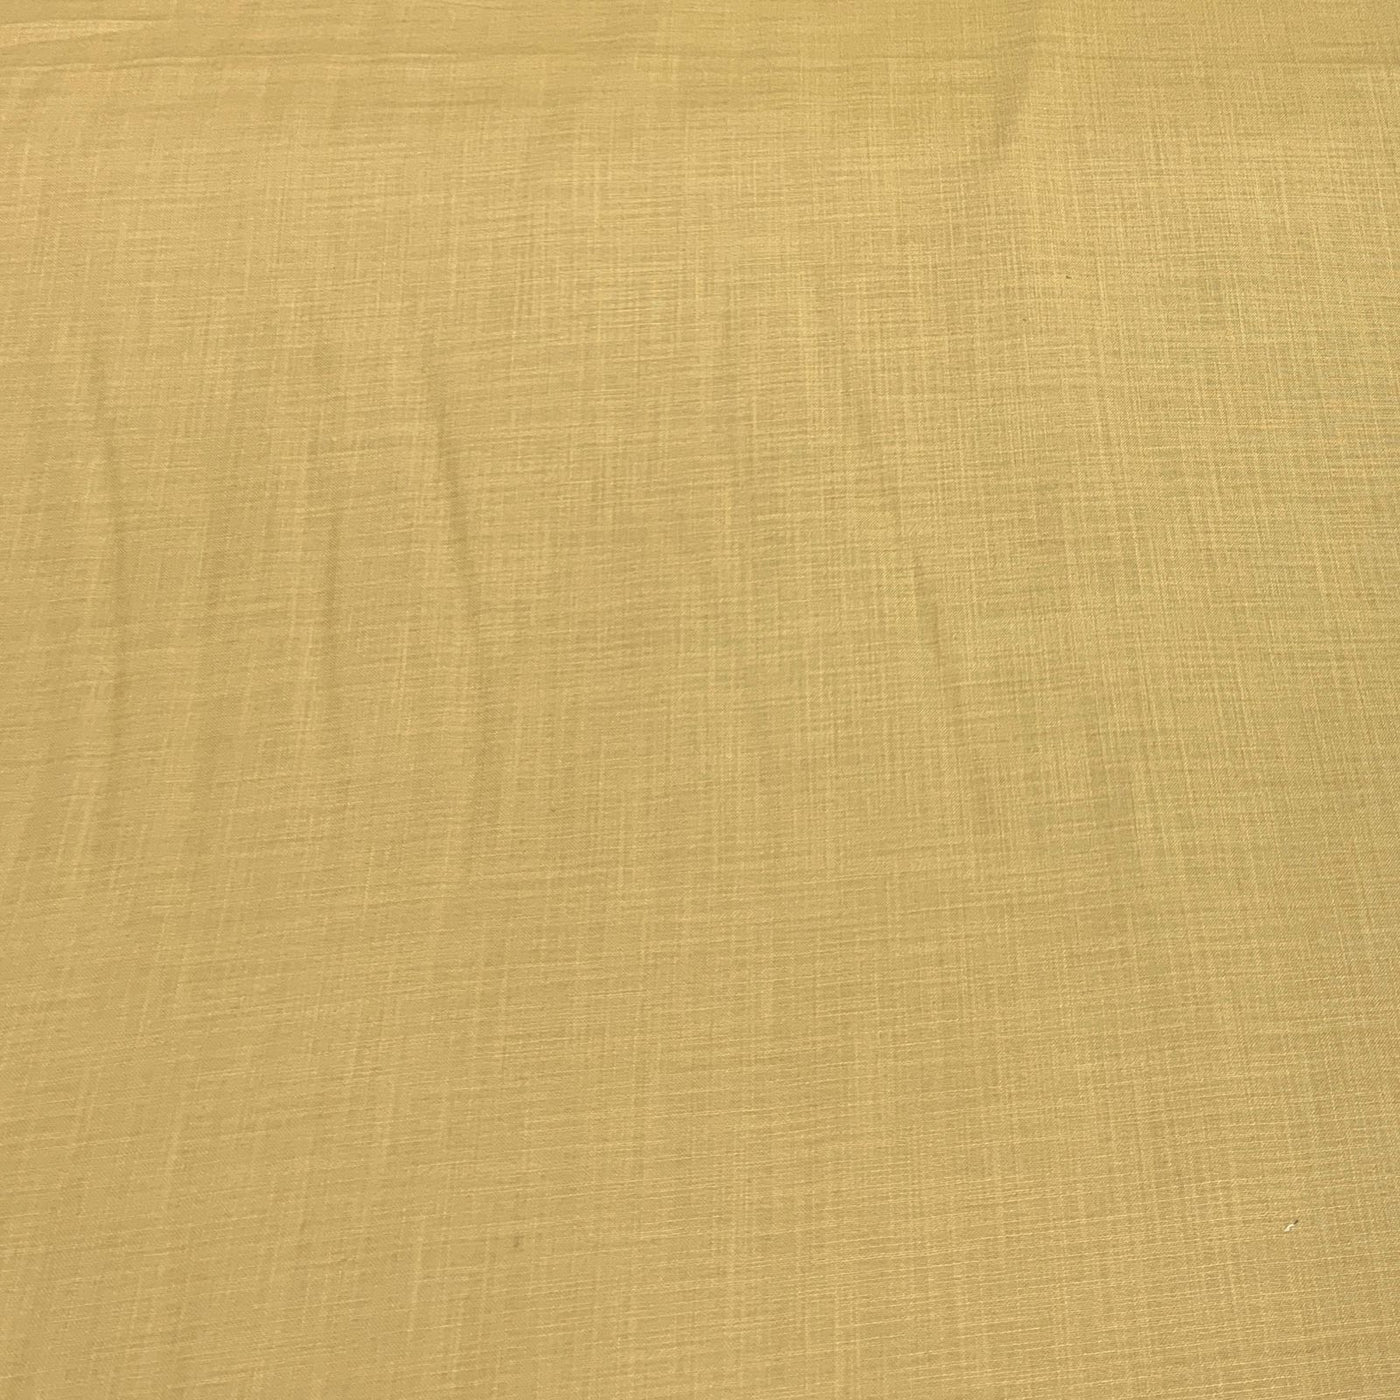 Dark Mustered Plain Cotton Matka Fabric